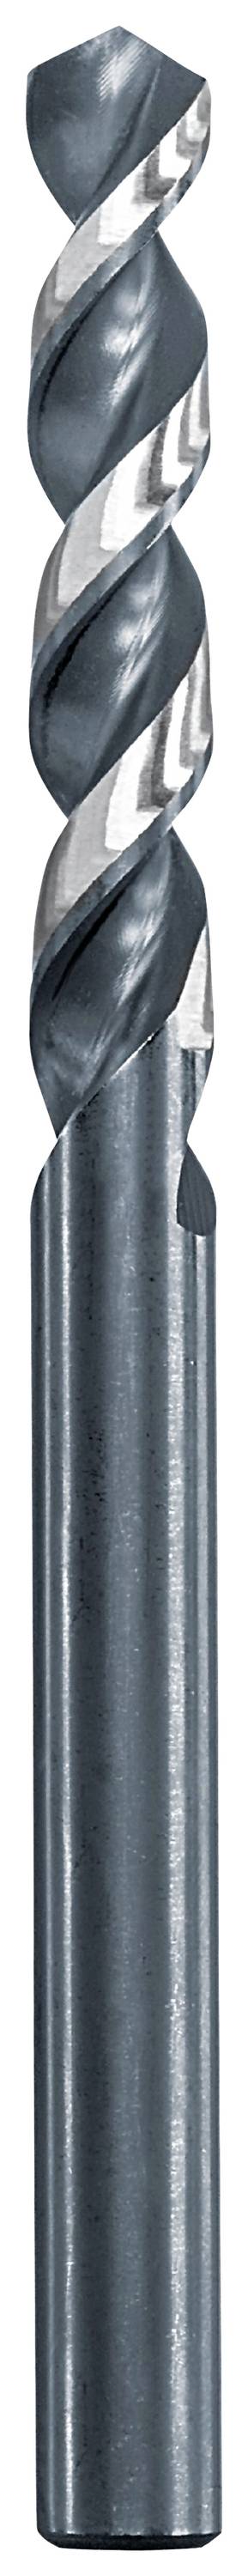 KWB 258648 Metall-Spiralbohrer 4.8 mm Gesamtlänge 86 mm 1 St.